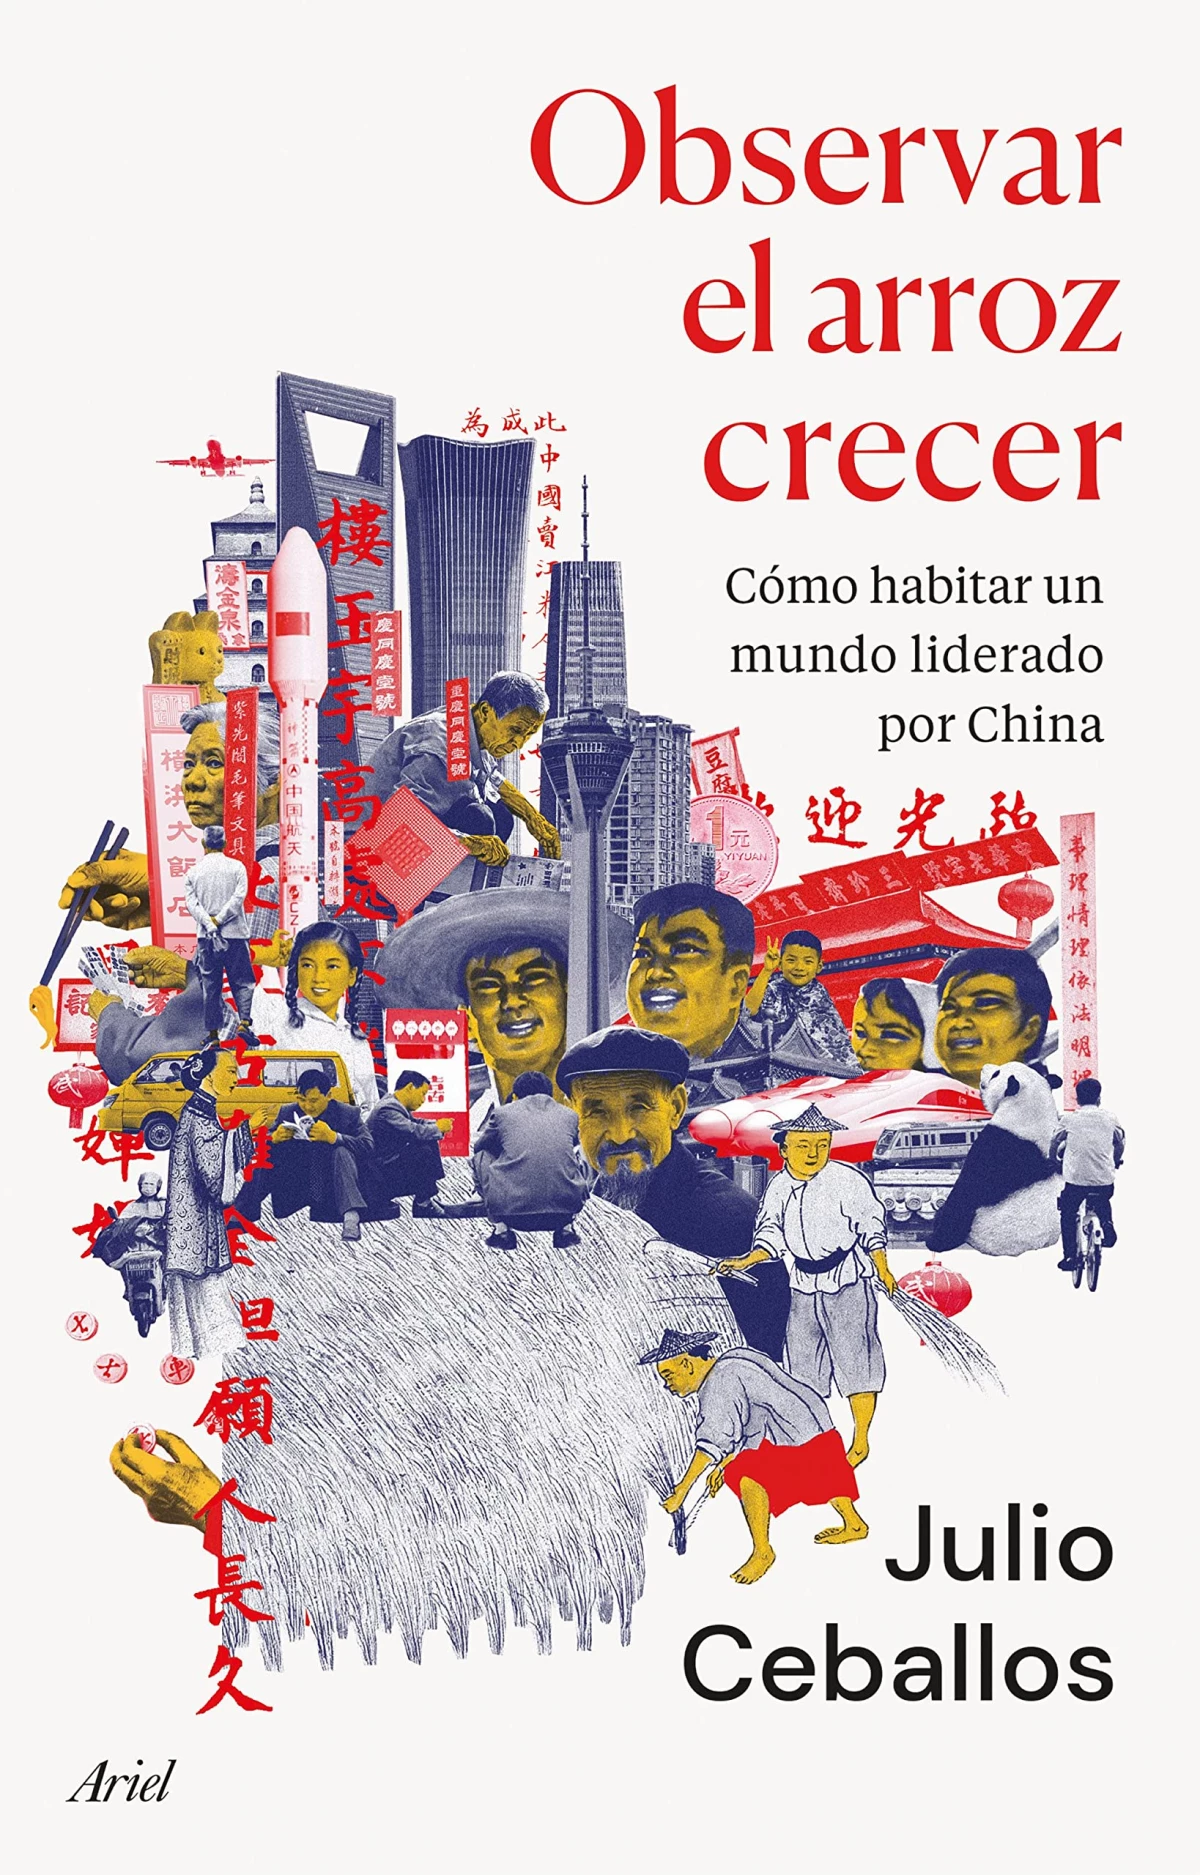 Observar el arroz crecer de Julio Ceballos - Libros para regalar el Día del Padre